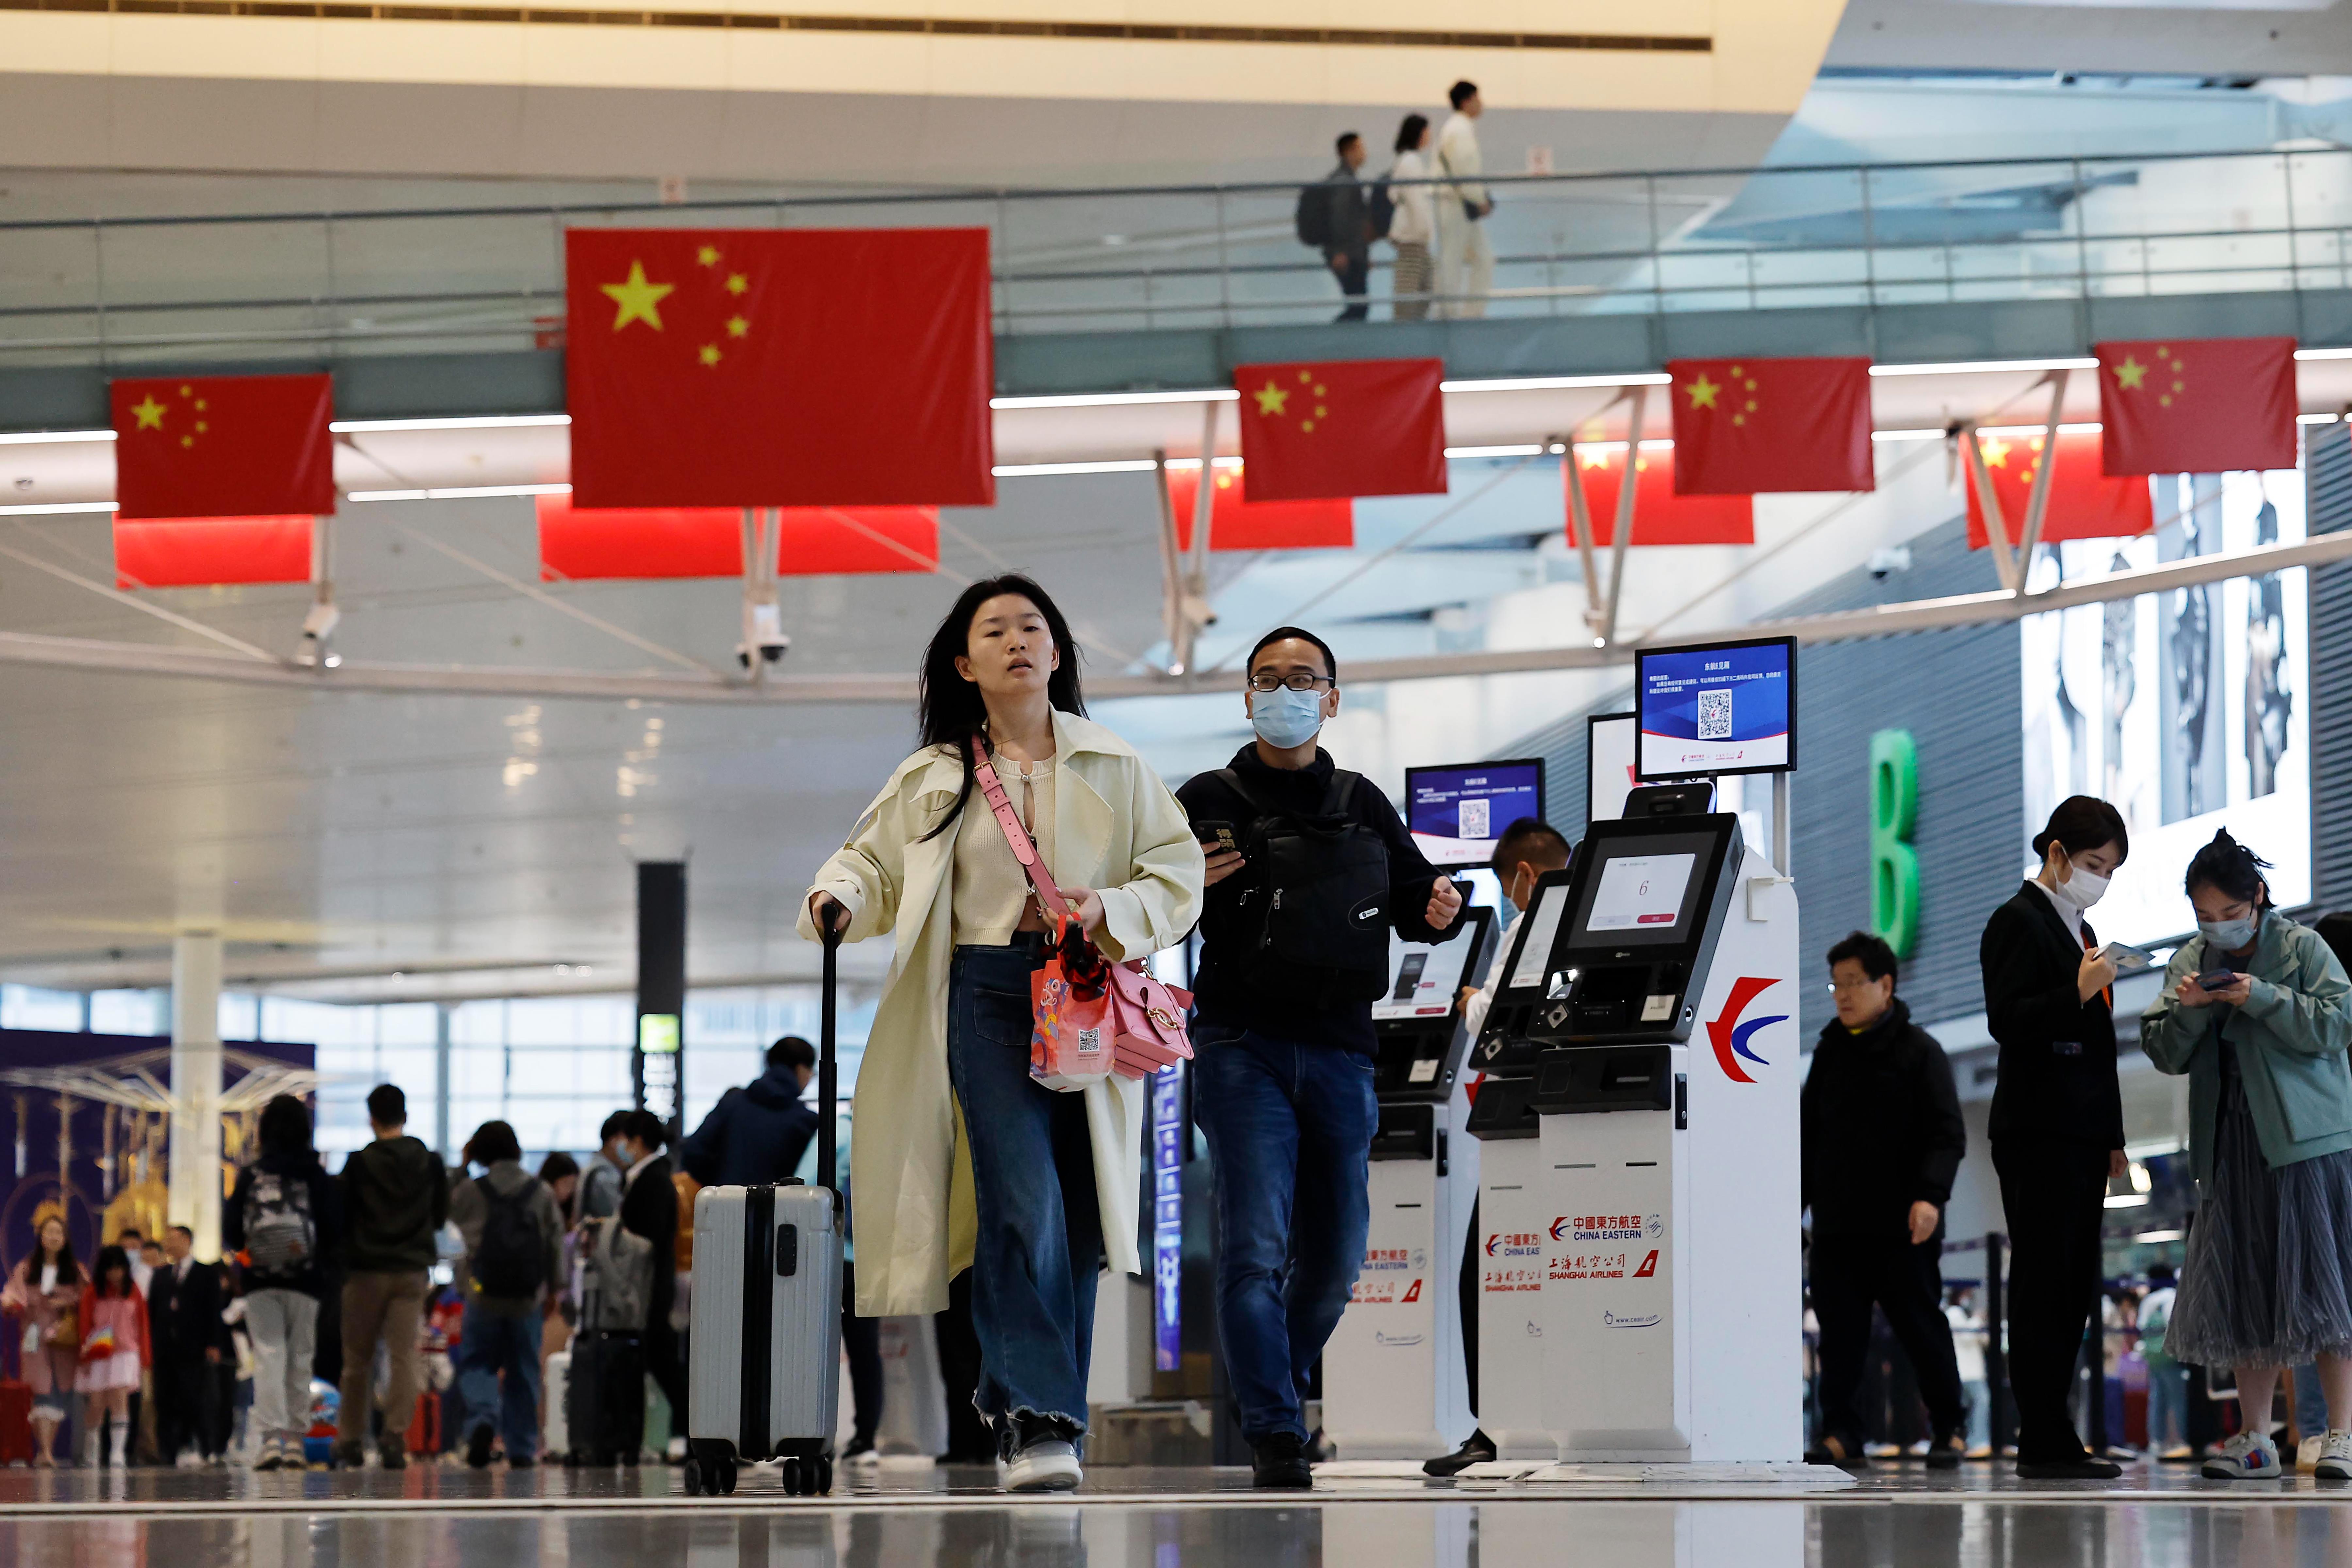 今年「五一」假期，不少大陆民众选择出国旅游。图为5月1日上海虹桥机场T2航站楼内景象。（中新社）